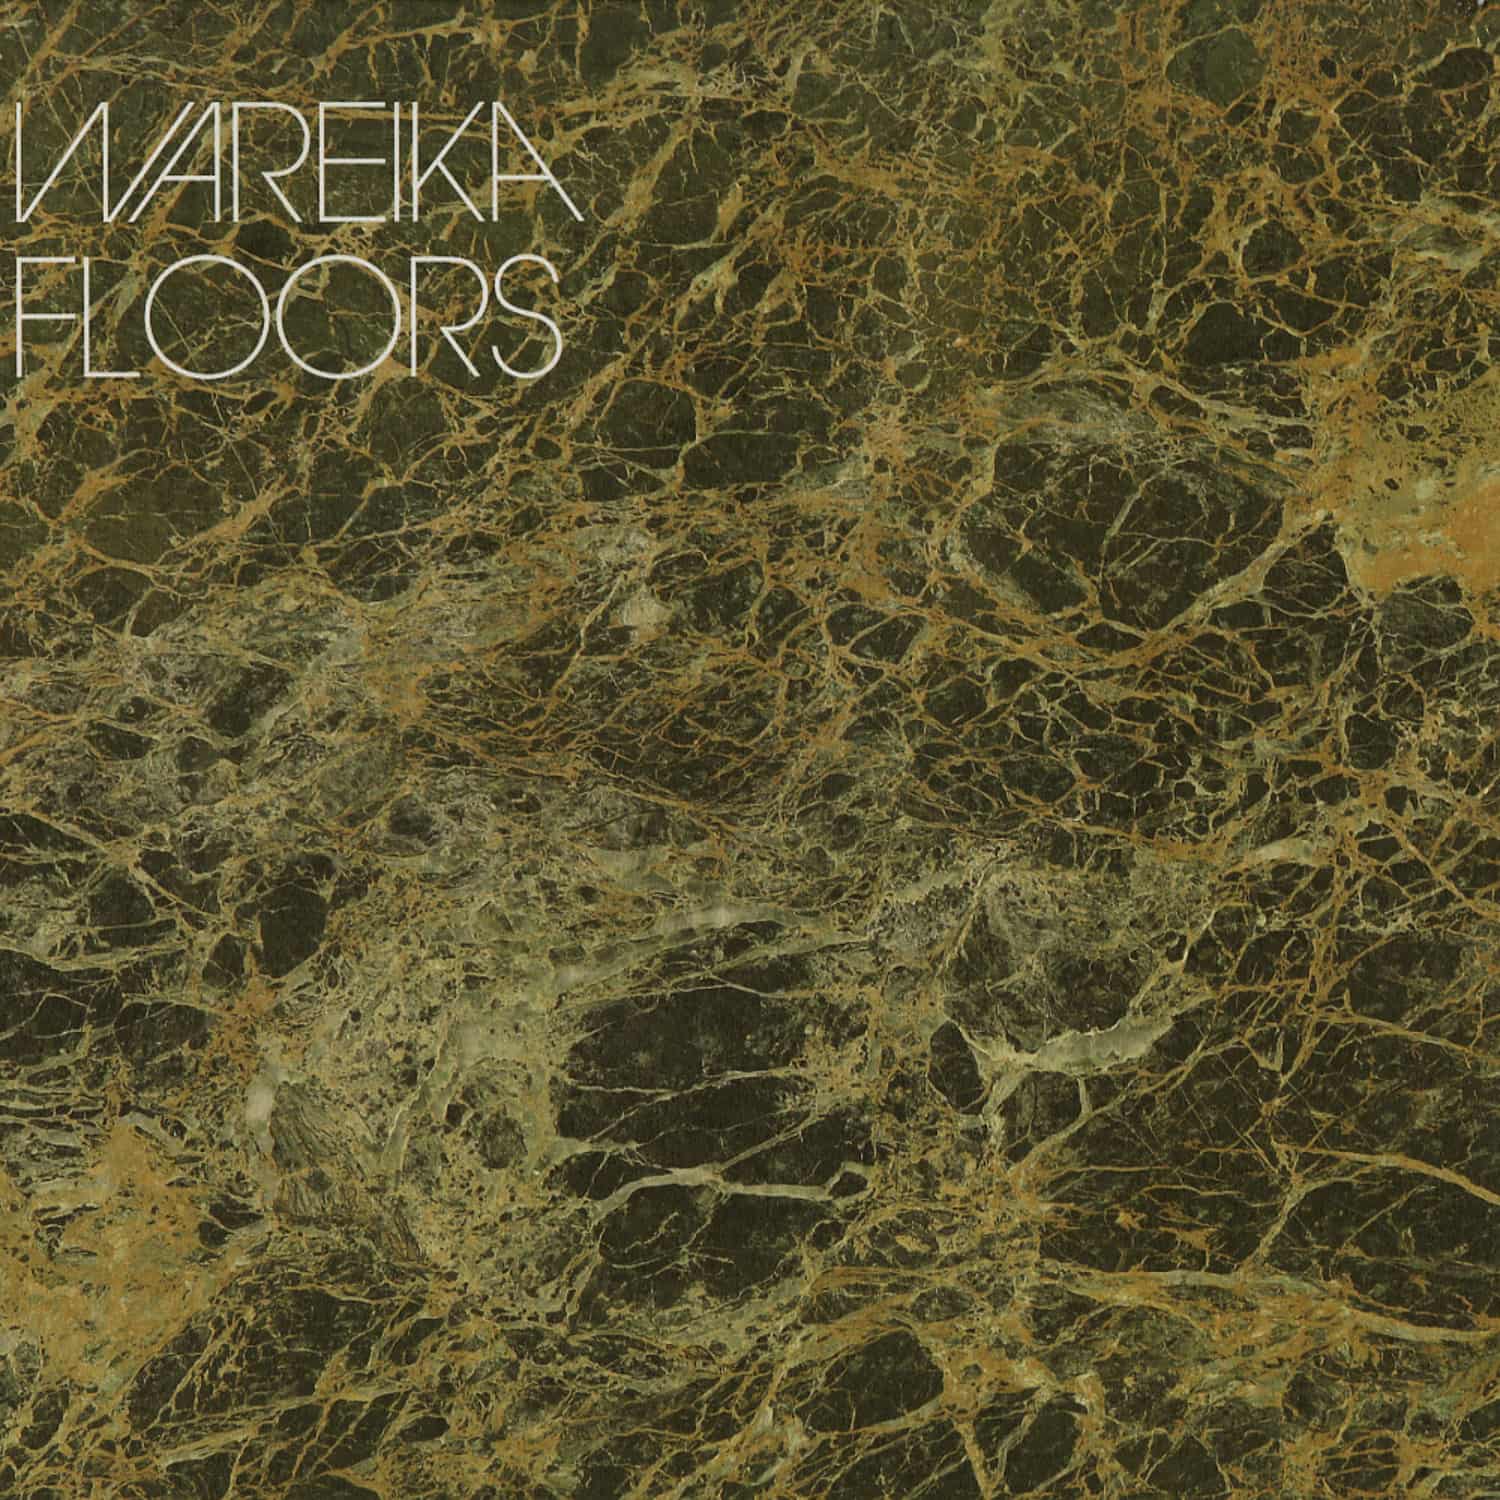 Wareika - FLOORS EP